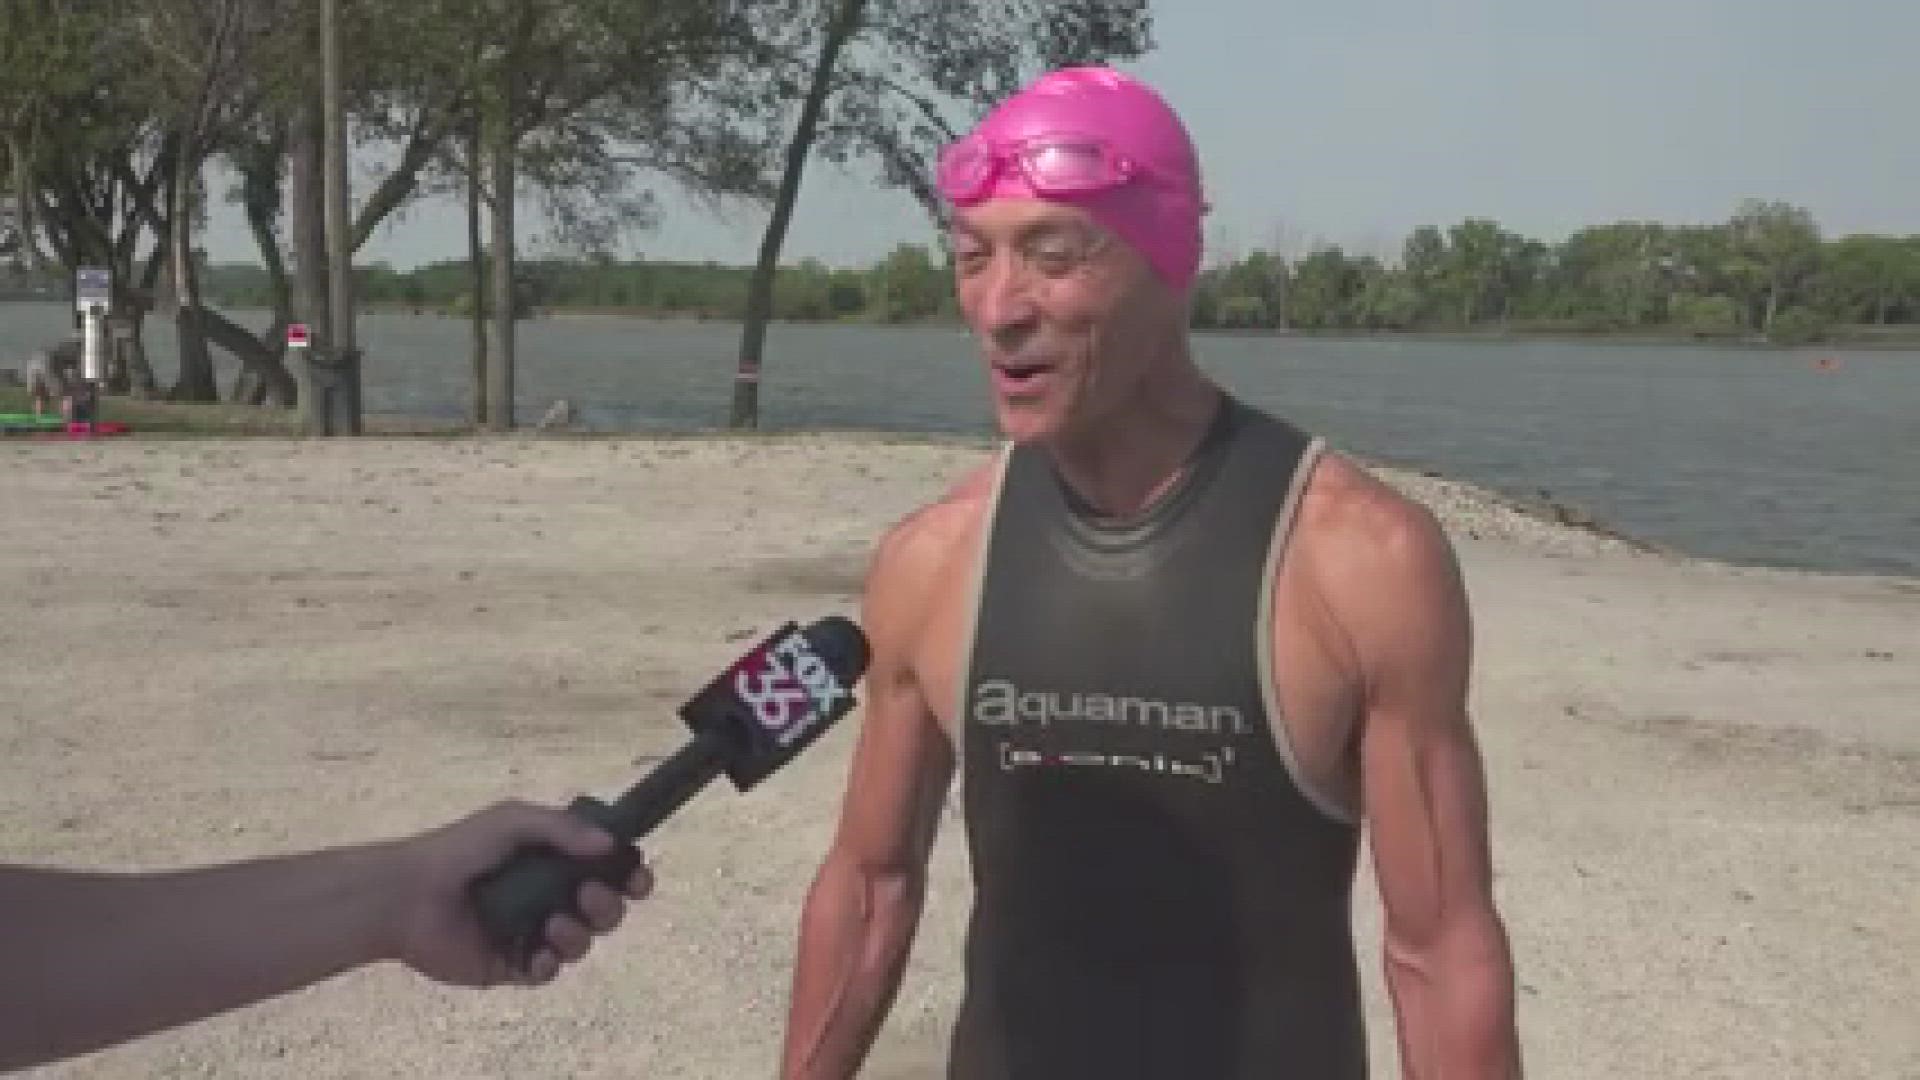 Joe Sparks' fundraiser, Swimmin' for Women, raises money for women's causes.